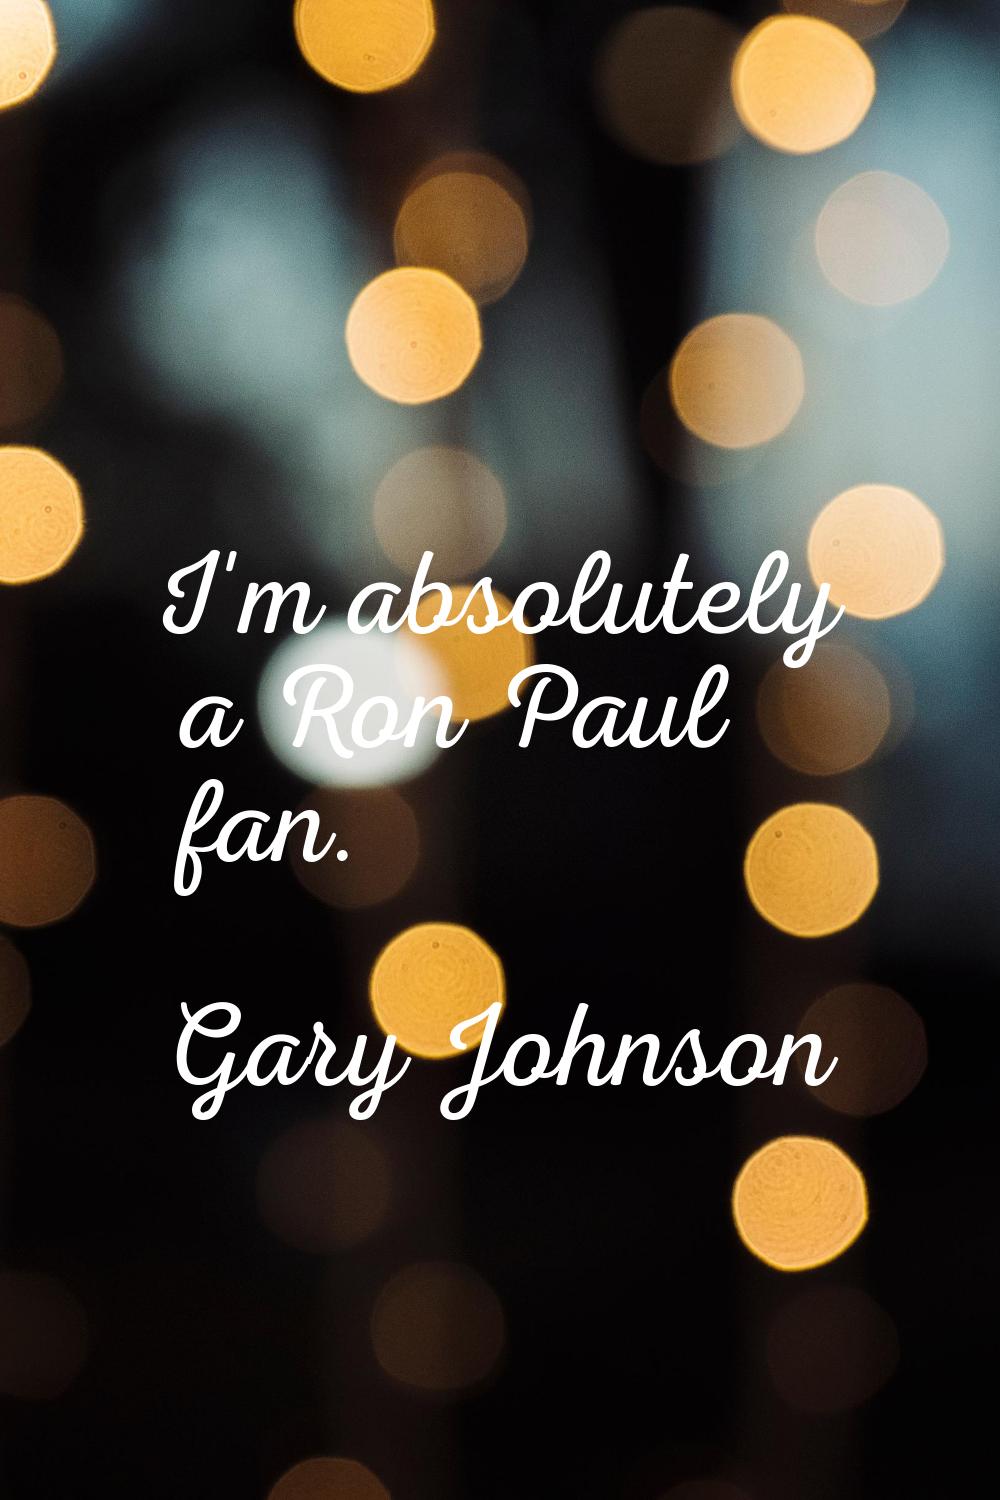 I'm absolutely a Ron Paul fan.